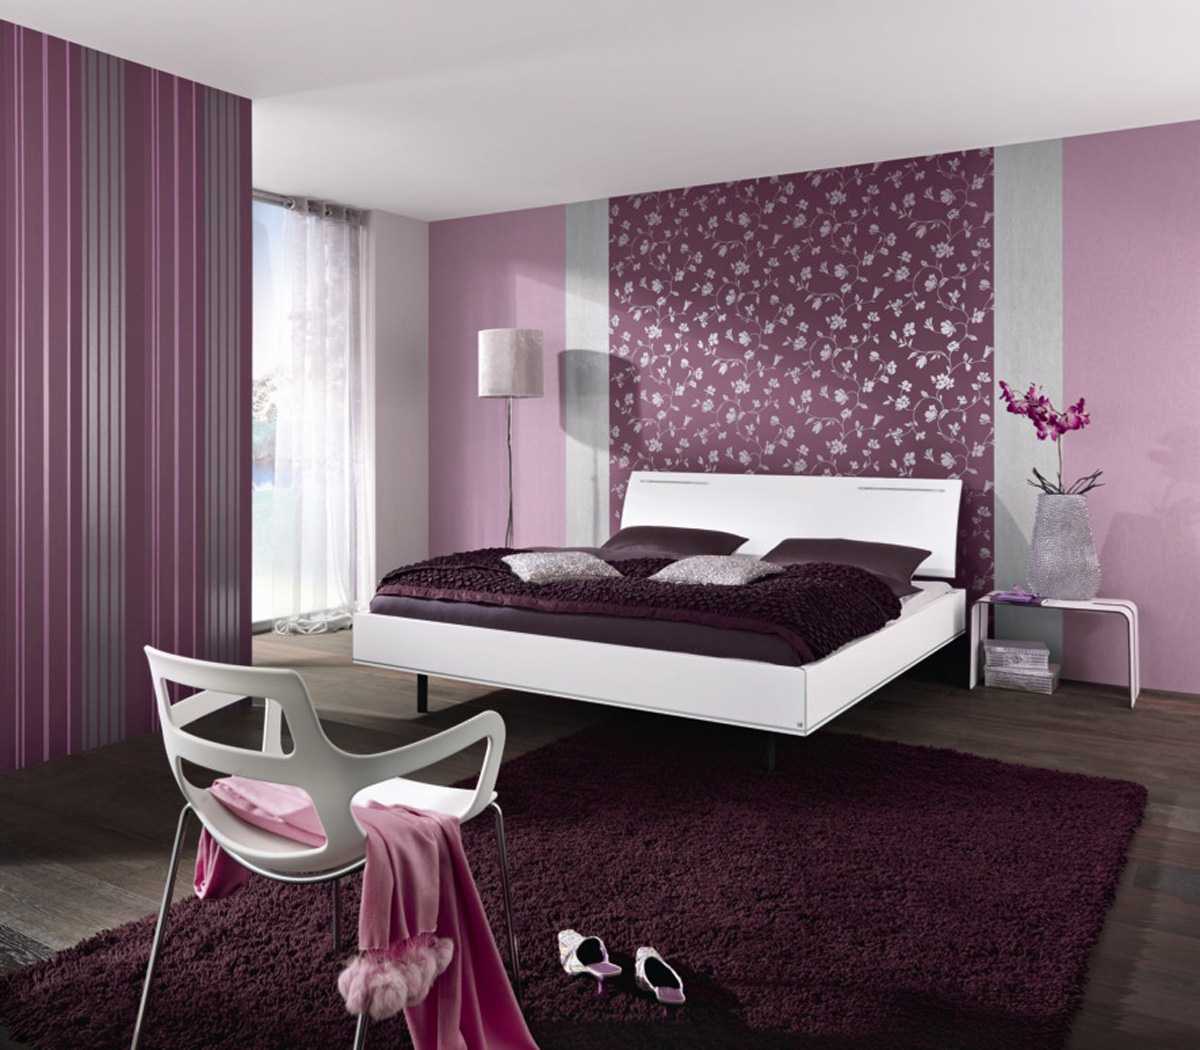 neįprastas miegamojo stilius purpurine spalva